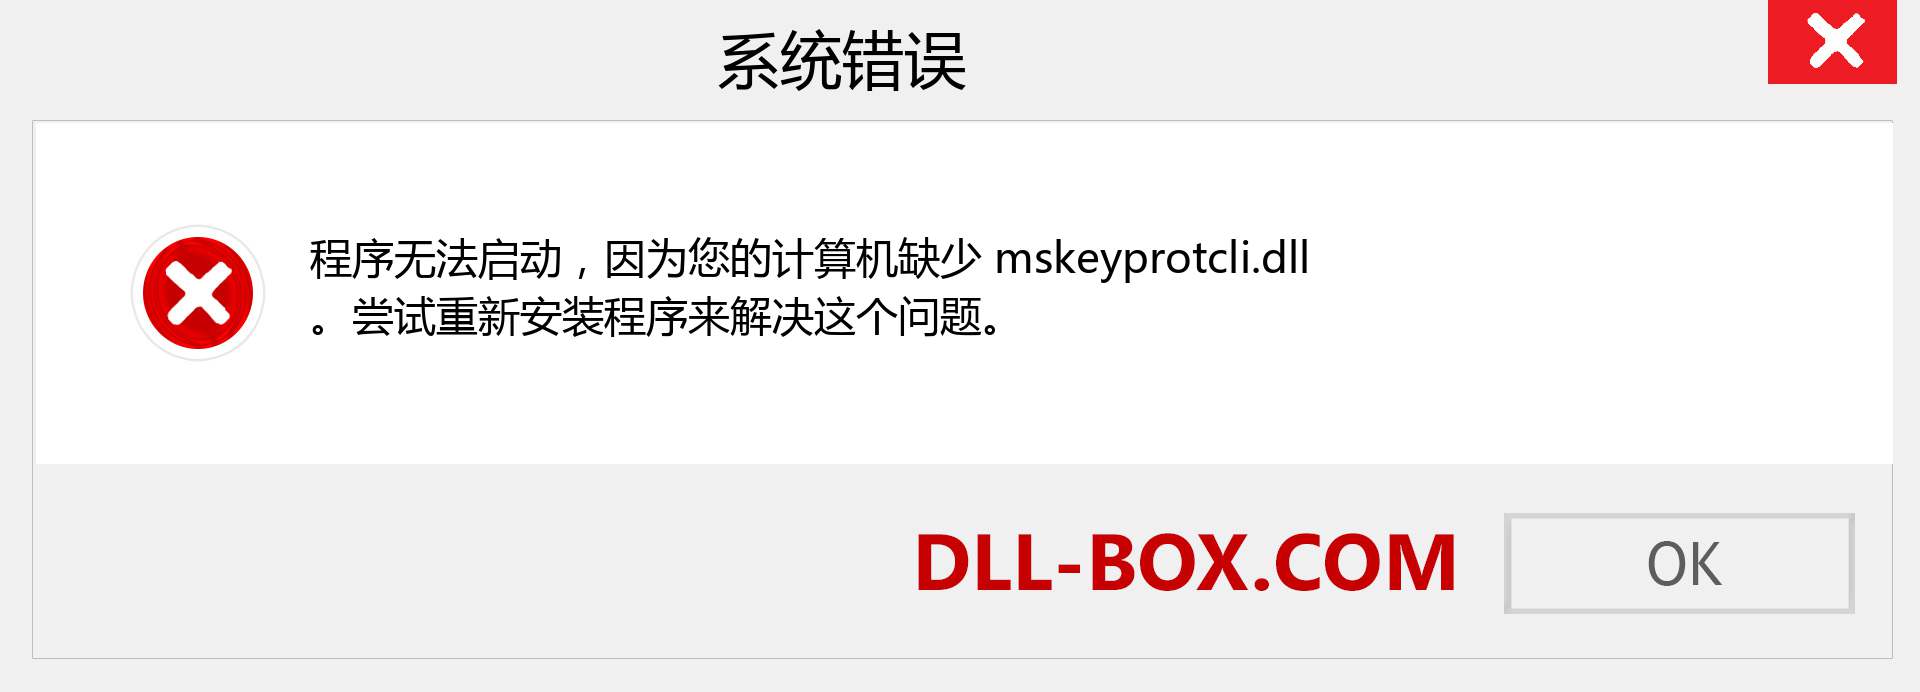 mskeyprotcli.dll 文件丢失？。 适用于 Windows 7、8、10 的下载 - 修复 Windows、照片、图像上的 mskeyprotcli dll 丢失错误